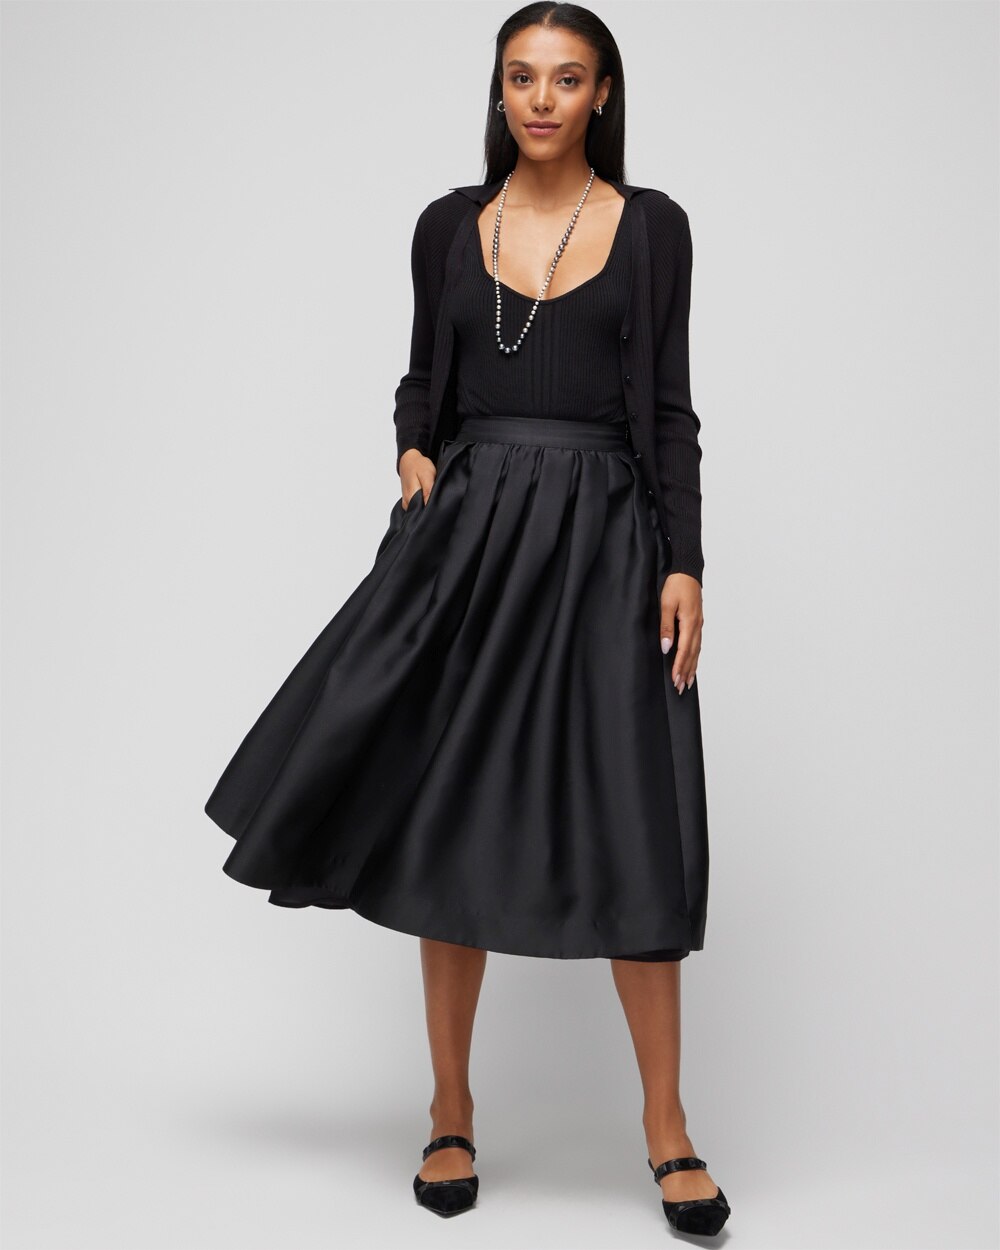 White House Black Market Fit & Flare Midi Dress Skirt In Black